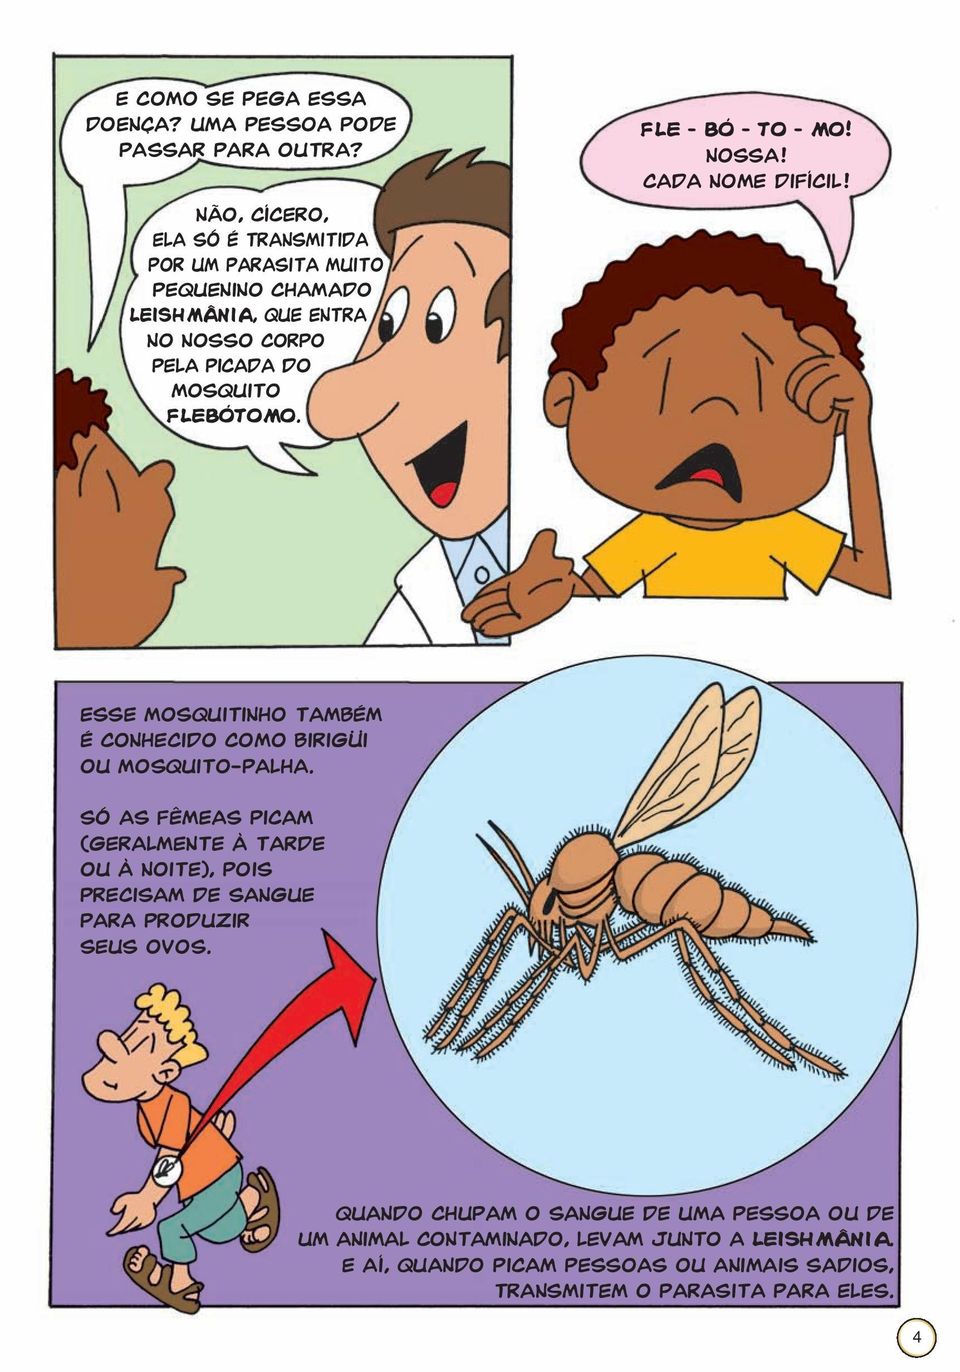 FLE BÓ TO MO! Nossa! Cada nome difícil! Esse mosquitinho também é conhecido como birigüi ou mosquito-palha.